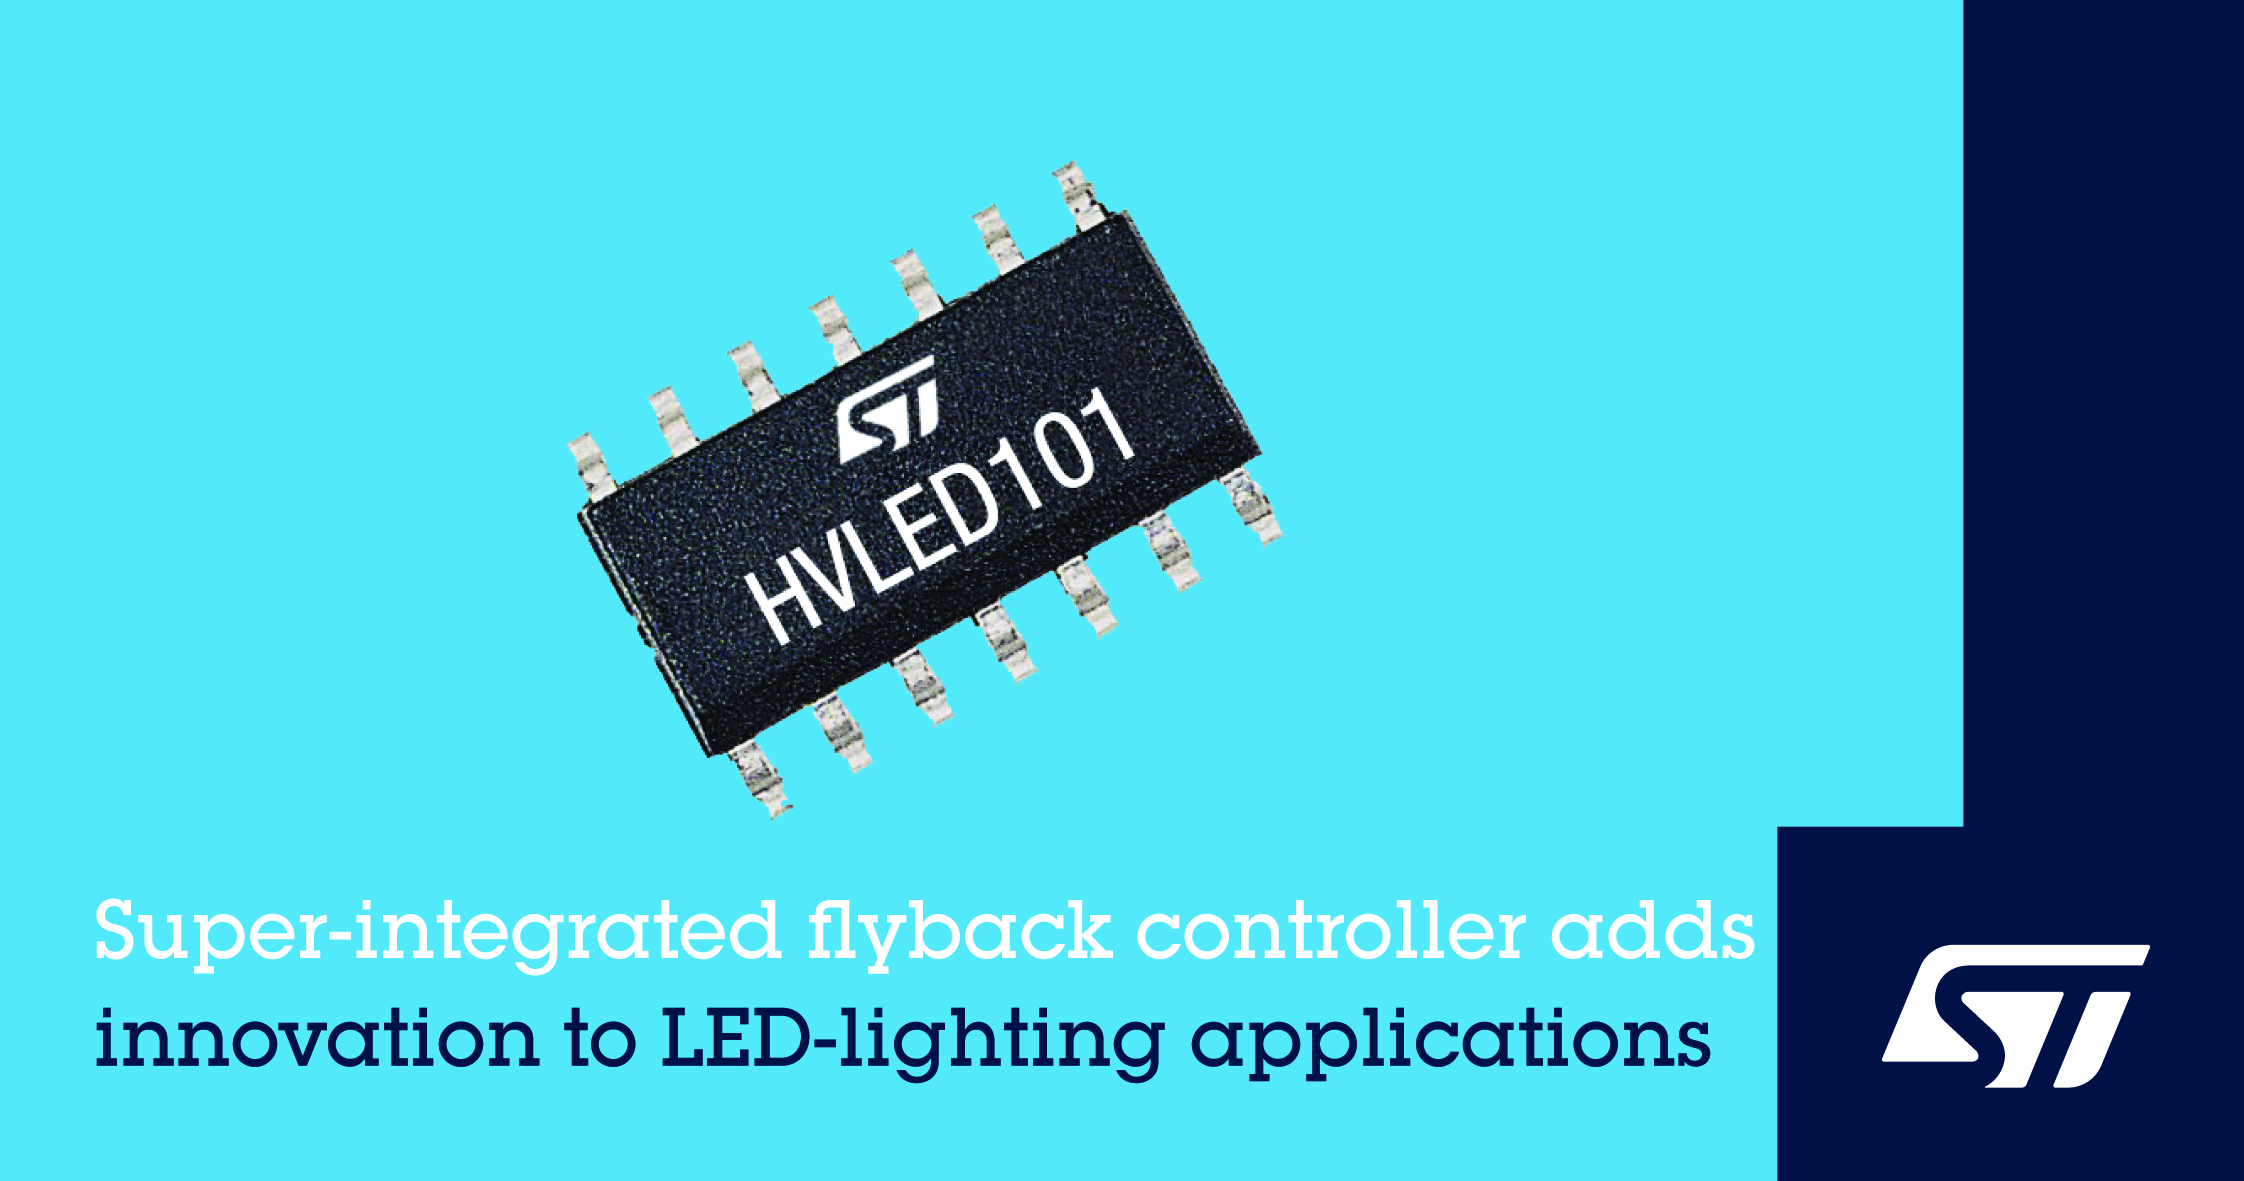 意法半導體發布集成先進功能的反激式控制器,提升LED照明性能